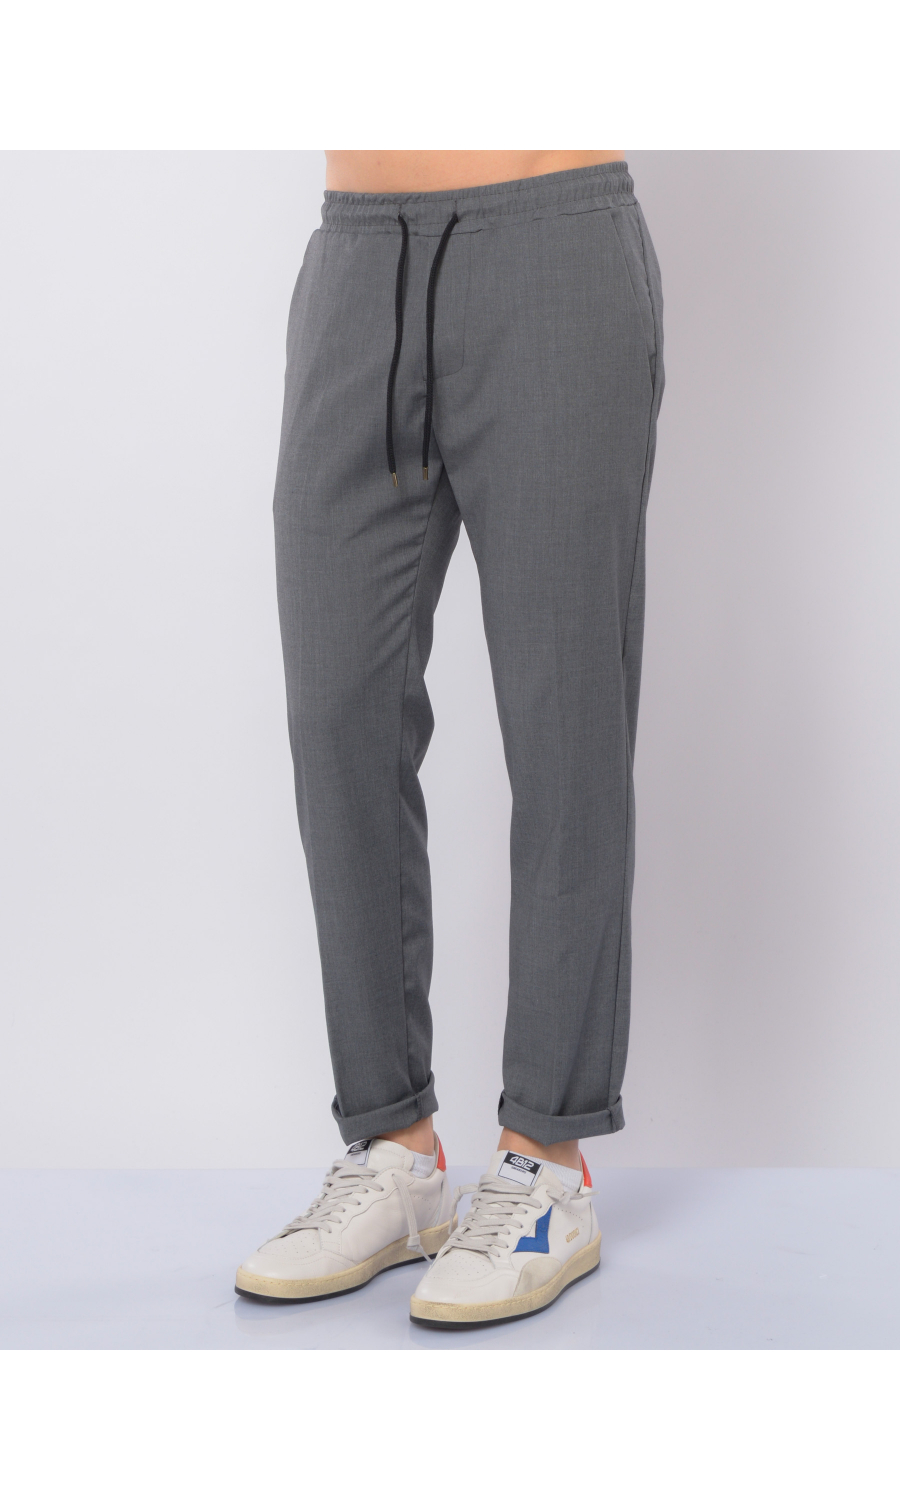 pantalone da uomo Qb24 chino con elastico